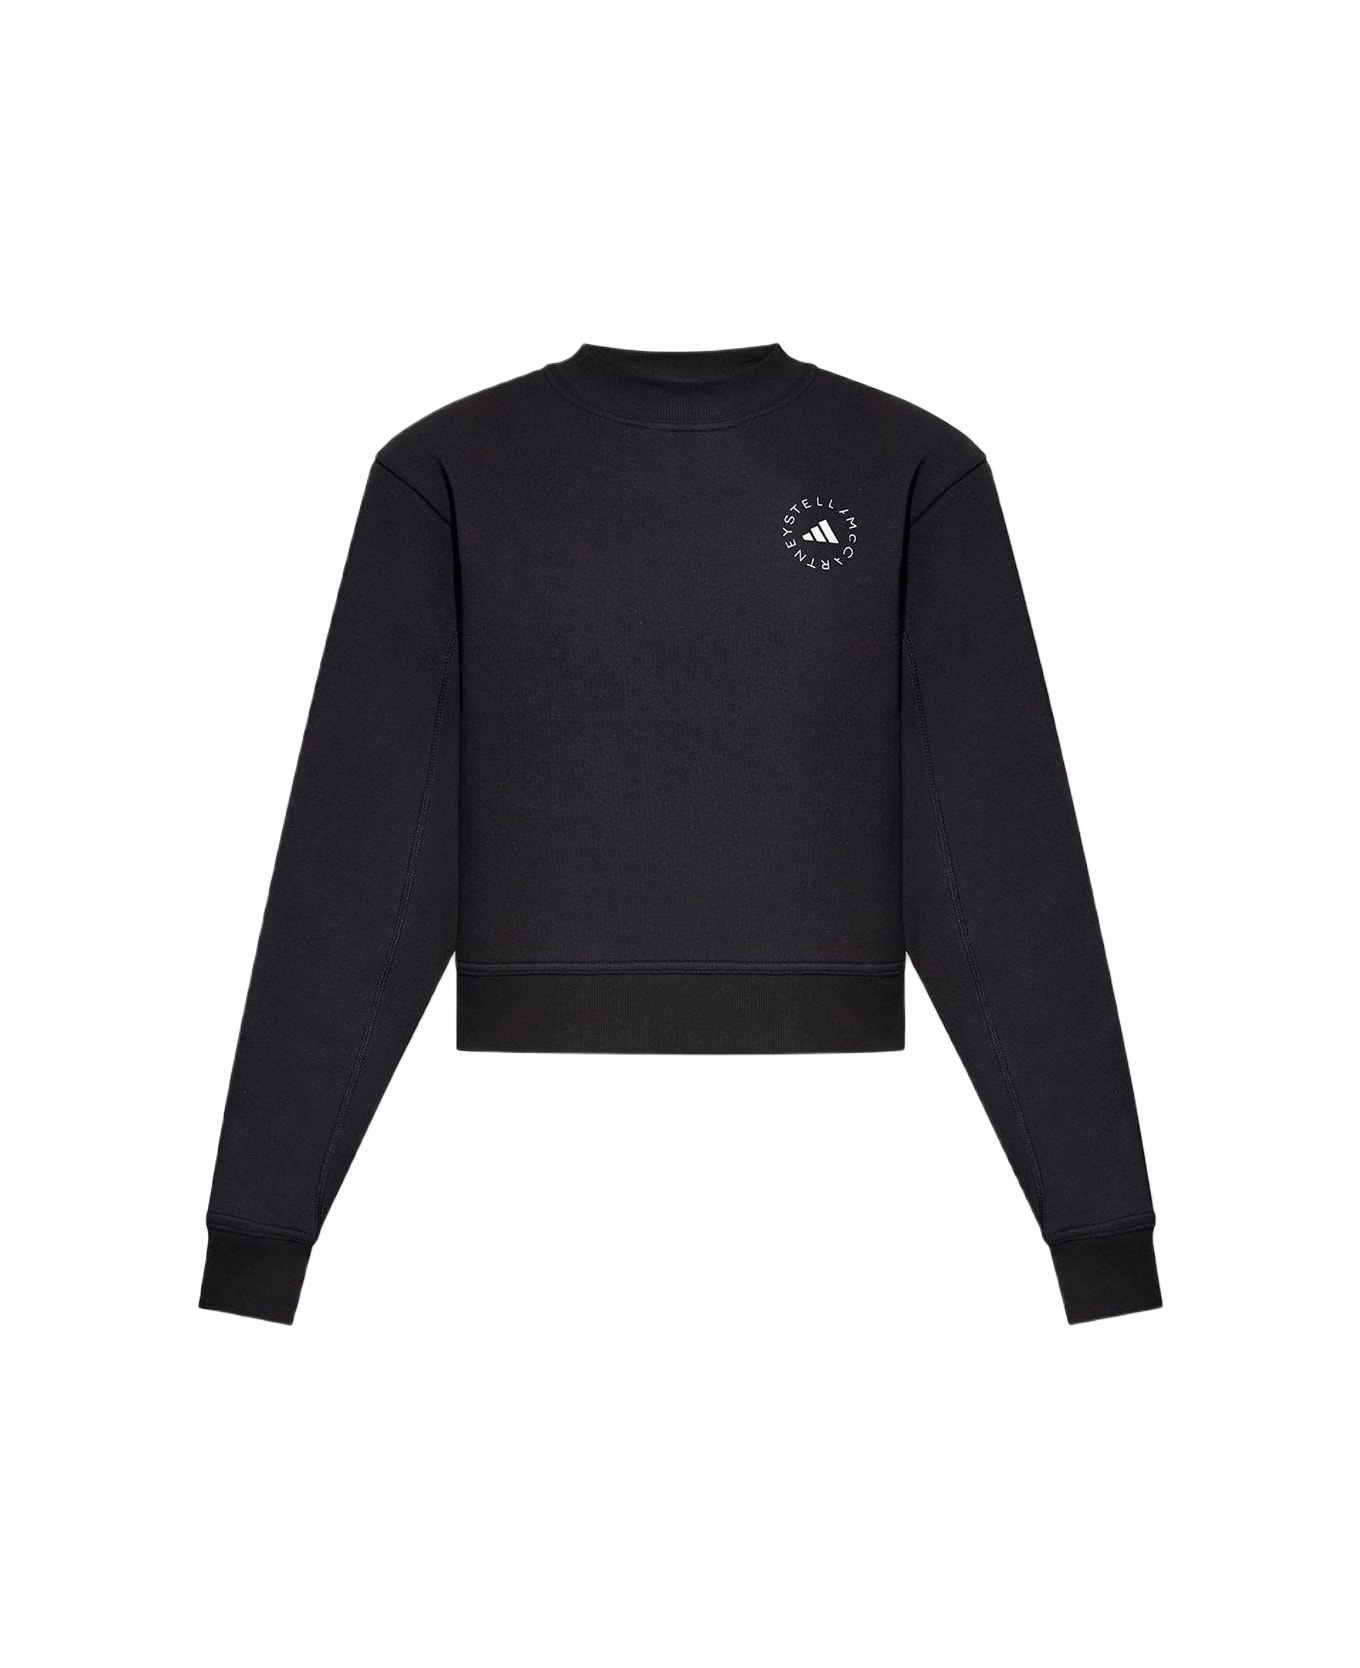 Adidas by Stella McCartney Logo Printed Crewneck Sweatshirt - BLACK